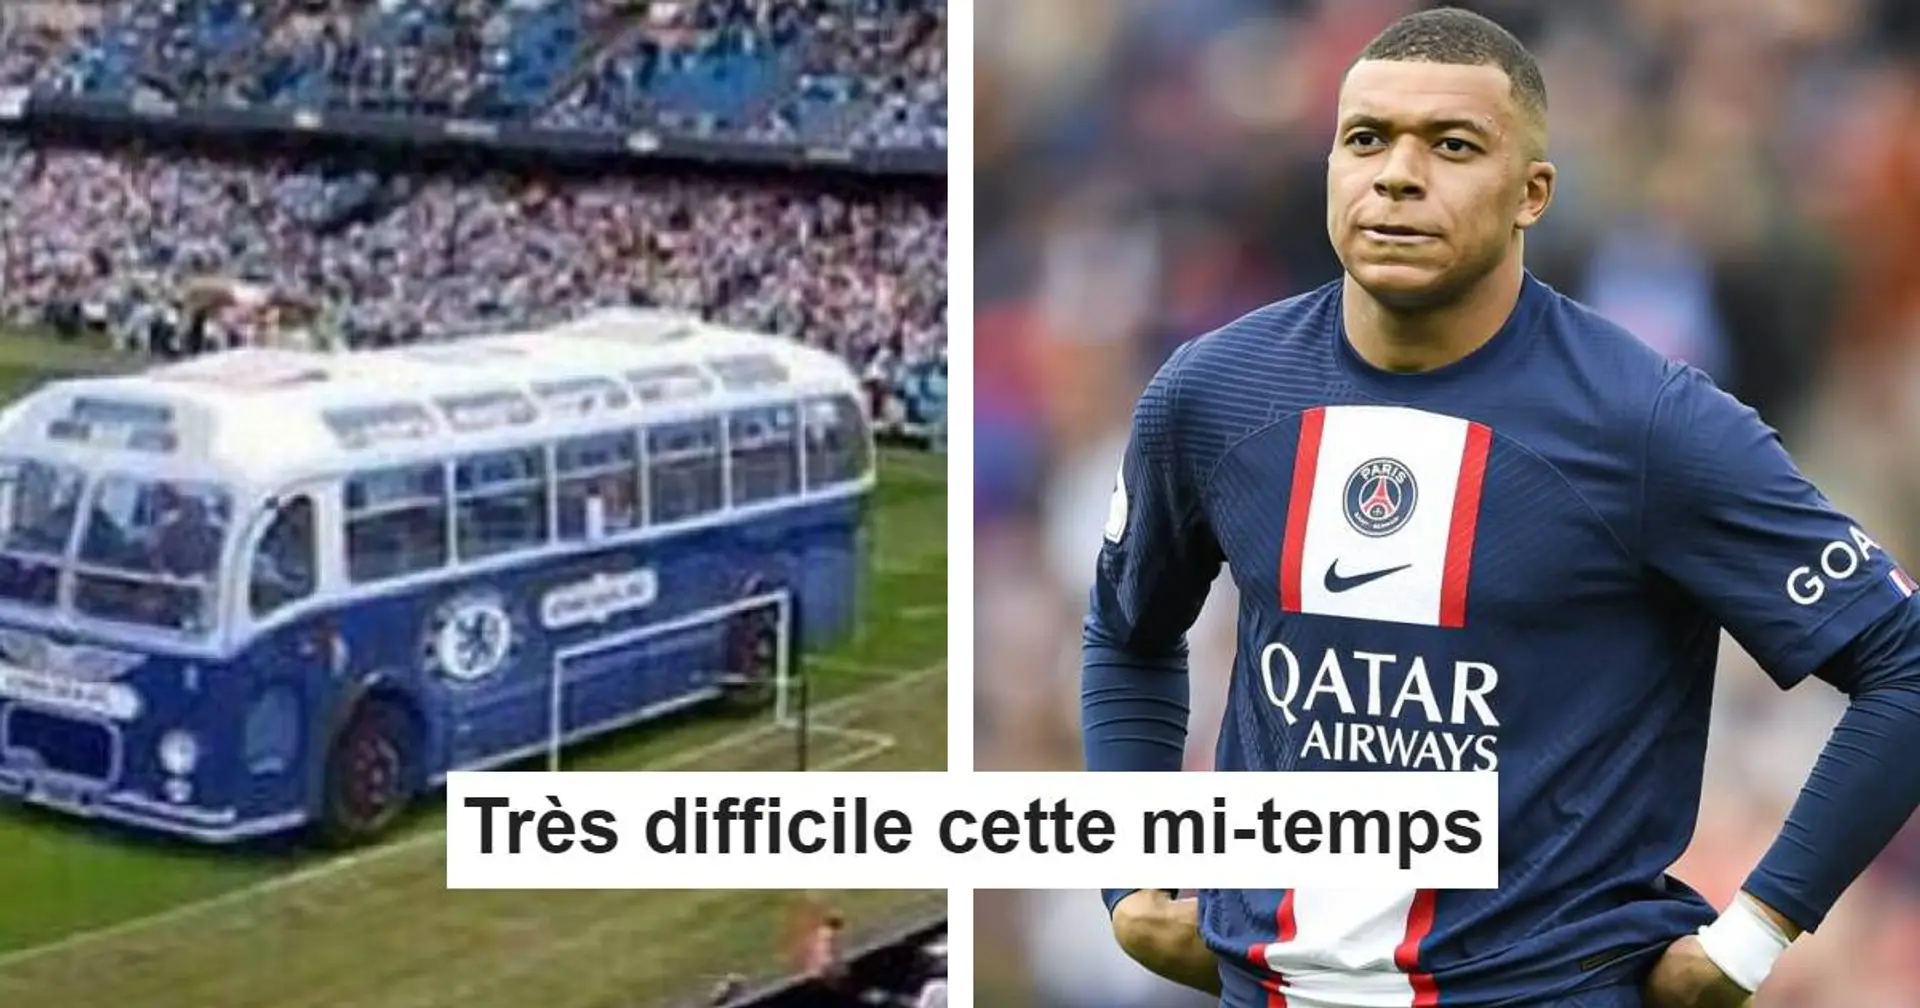 "Pas loin d'être la pire 1e période de la saison" : les fans réagissent à la triste mi-temps du PSG vs Metz